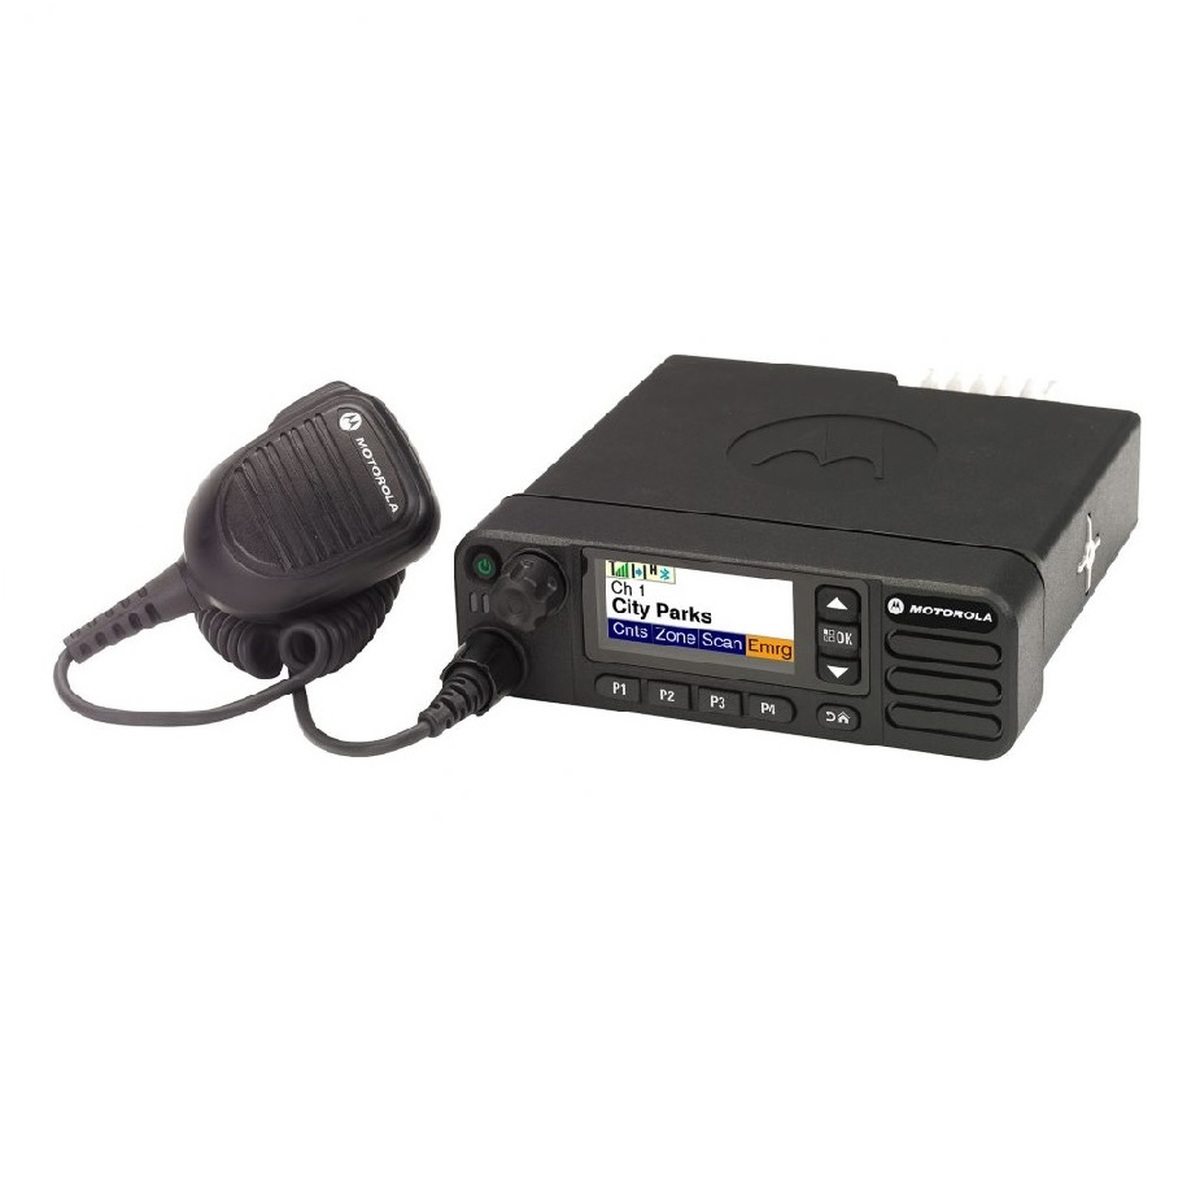 Radio Motorola DGM5500e Digital LAM28JQN9SA1AN VHF 136-174 MHZ de 45W